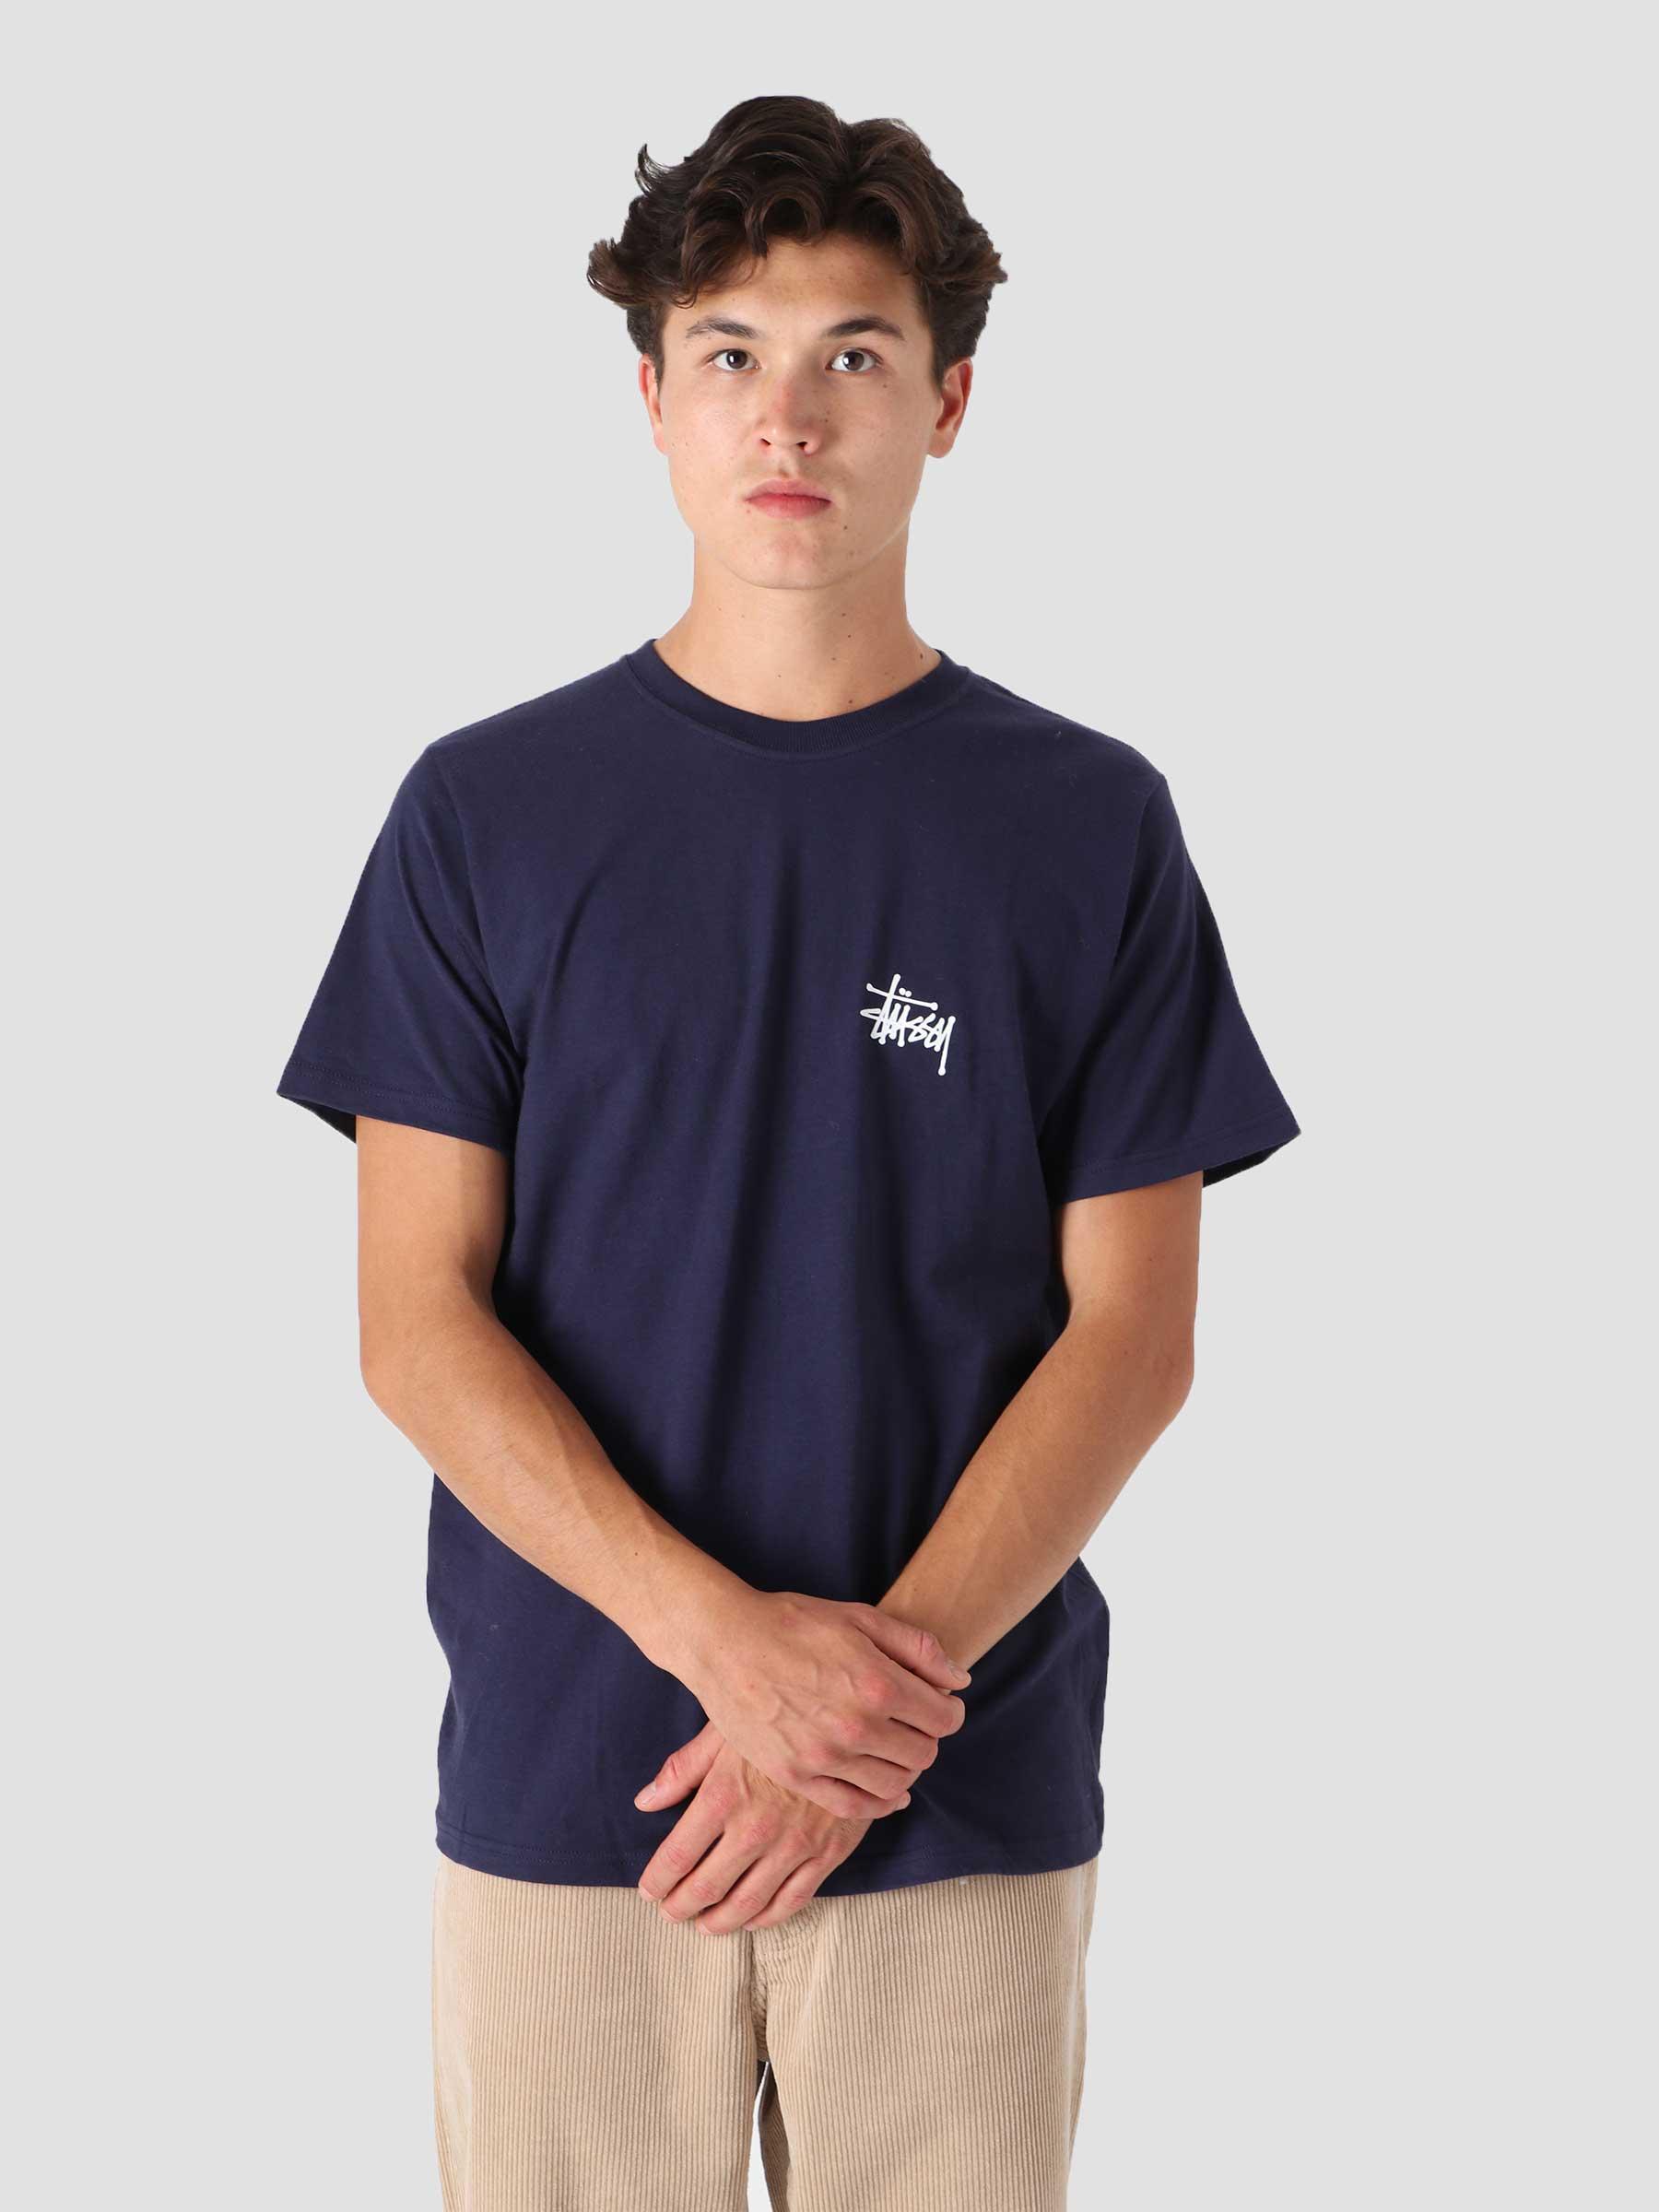 Basic Stussy T-Shirt Navy 1904649-0806